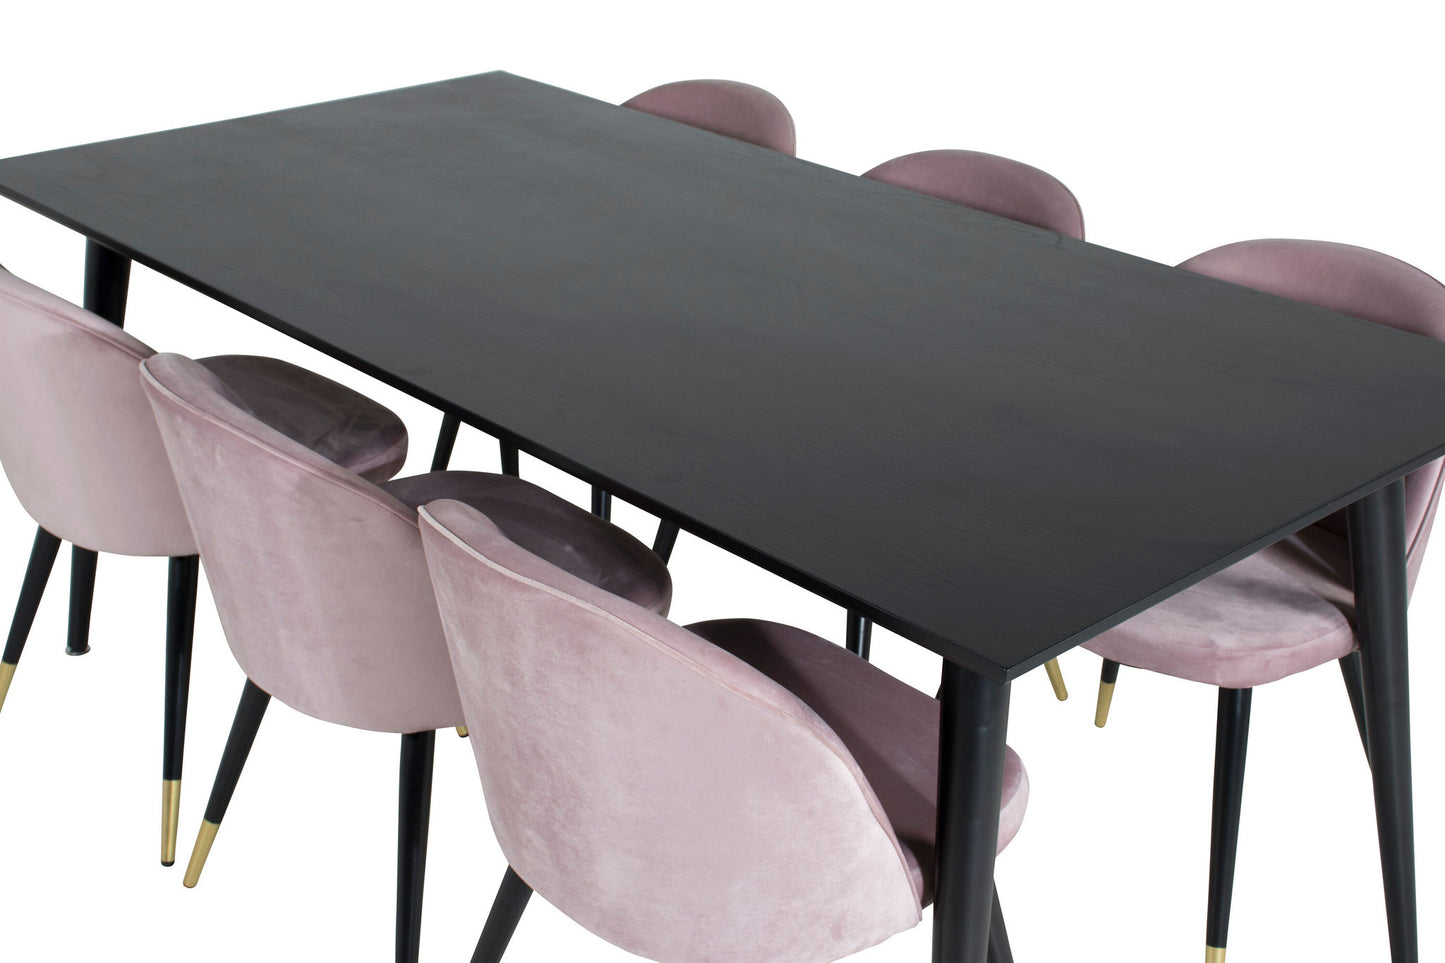 Dipp - Spisebord, 180*90cm - Sort finér / helt sorte ben + velour Spisebordsstol Messing - Pink / Sort